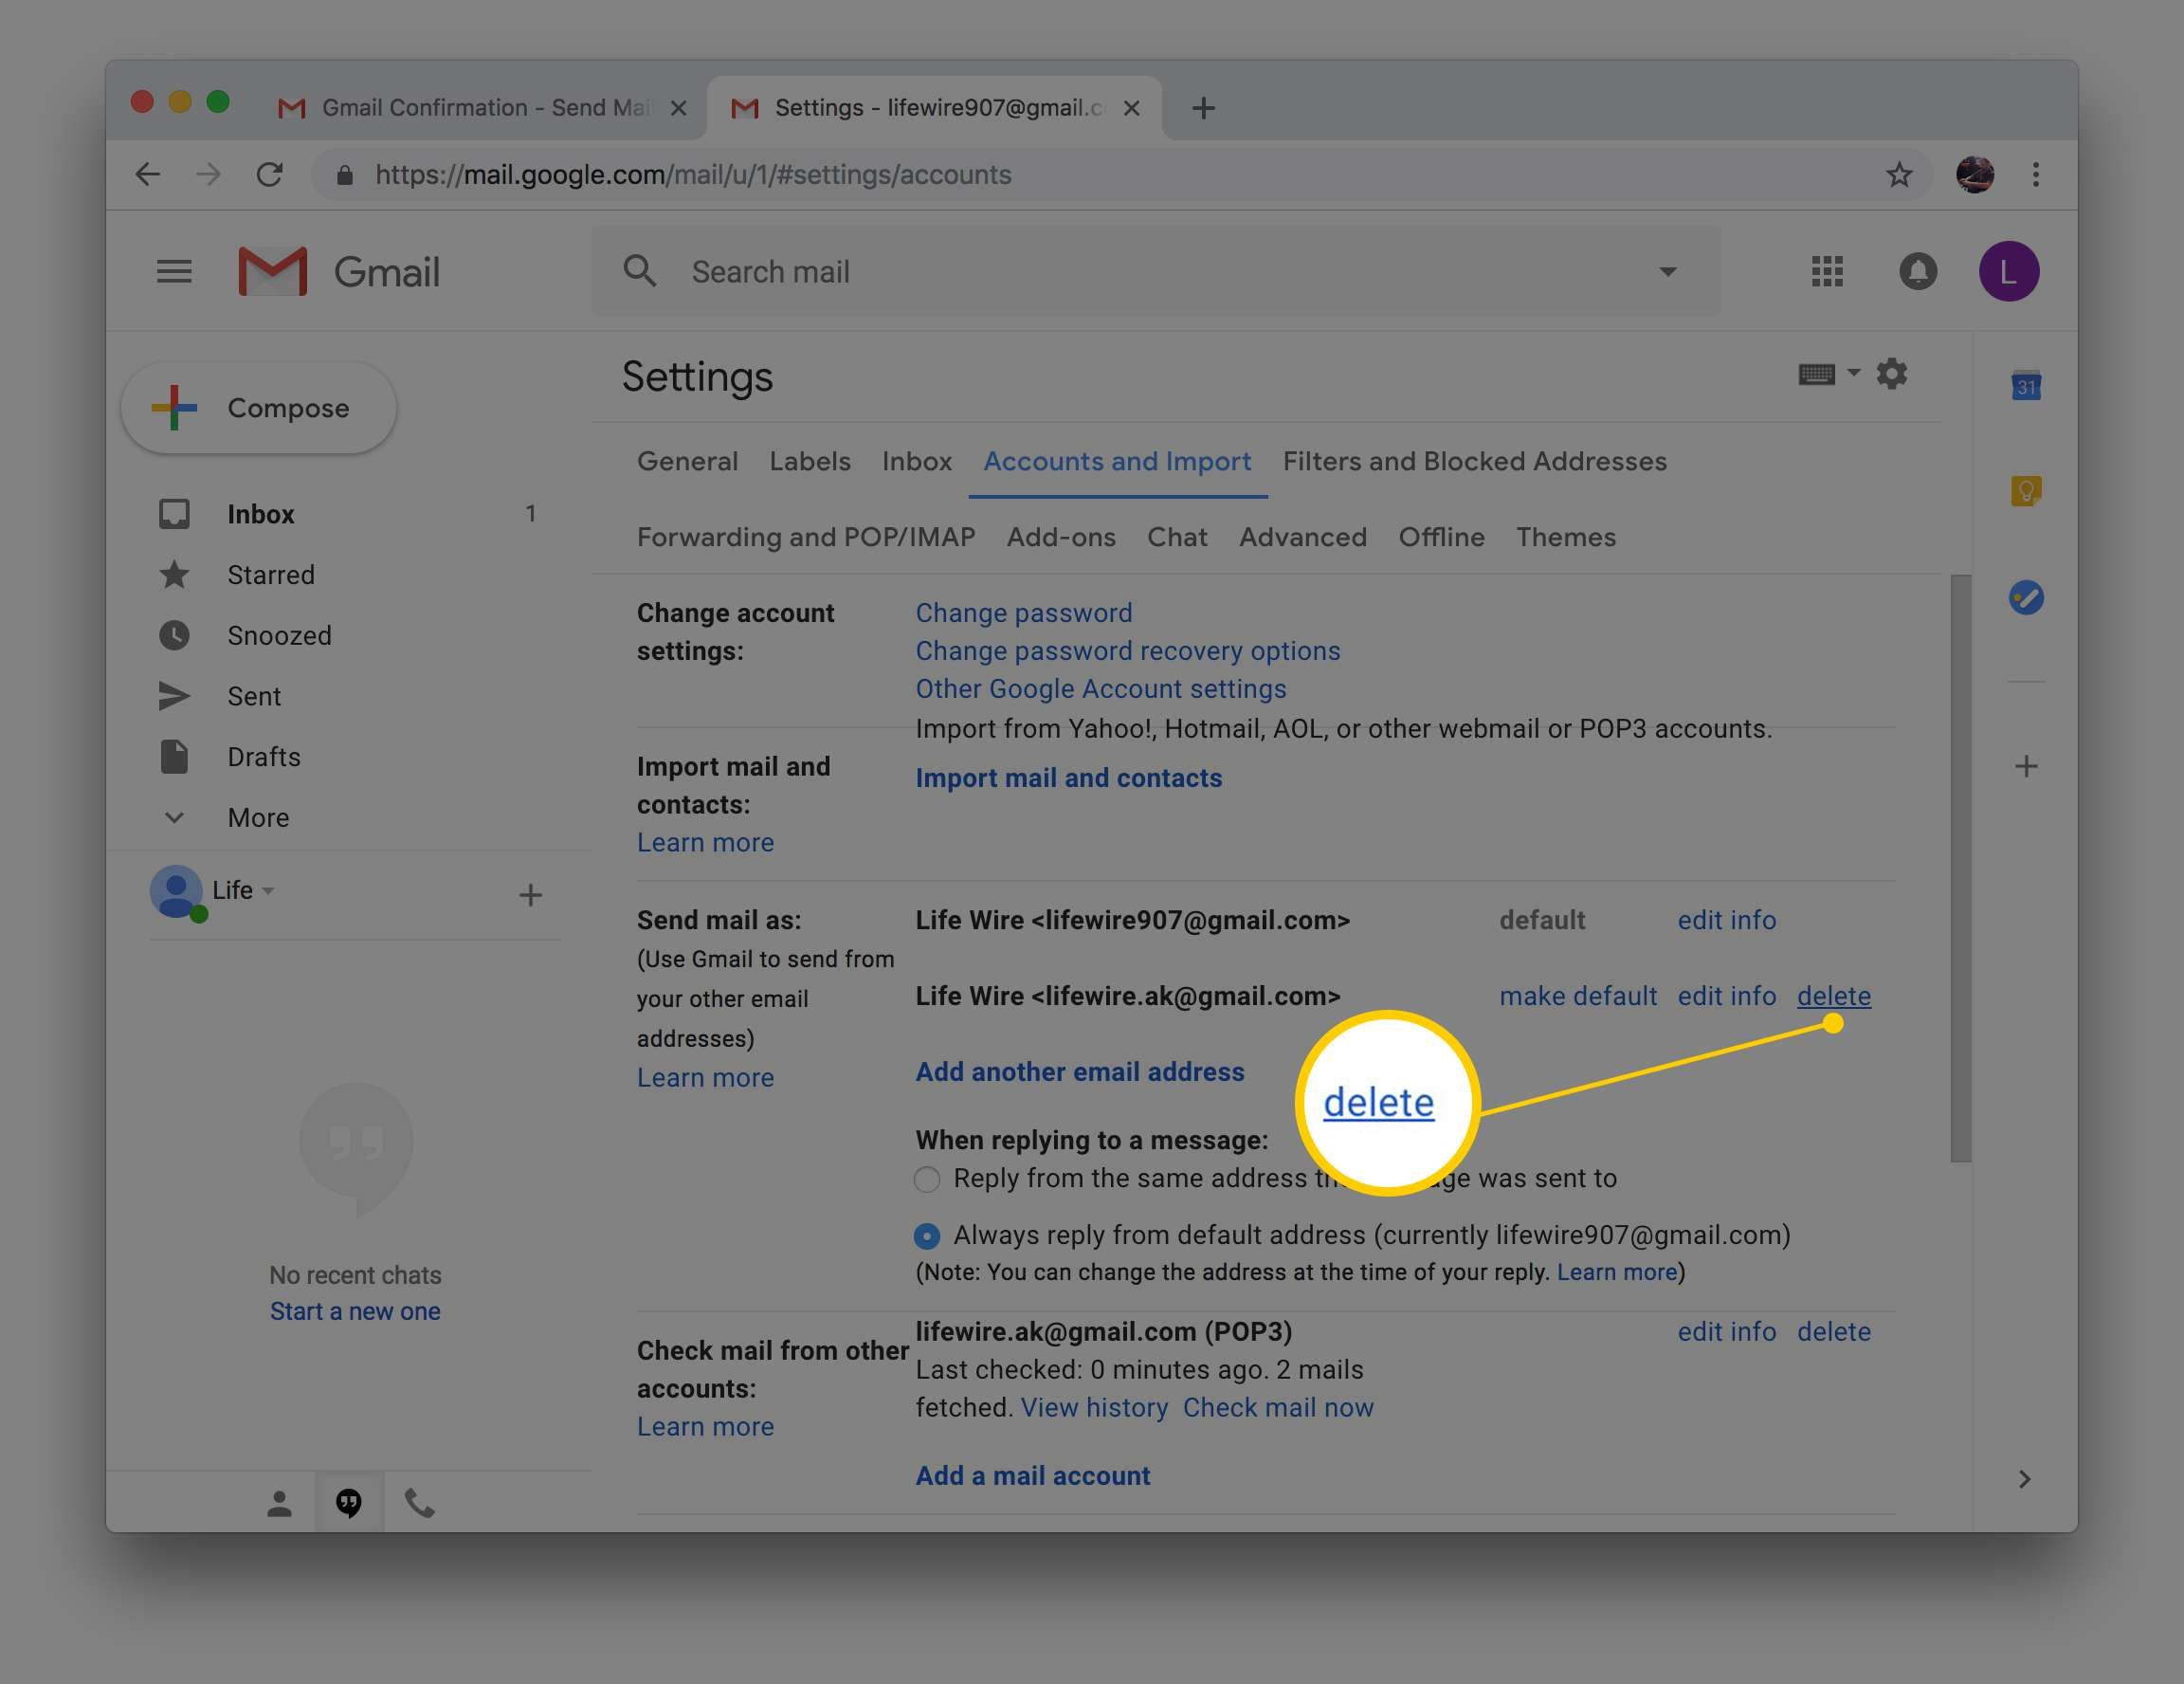 Снимок экрана настроек в Gmail, показывающий кнопку удаления новой учетной записи